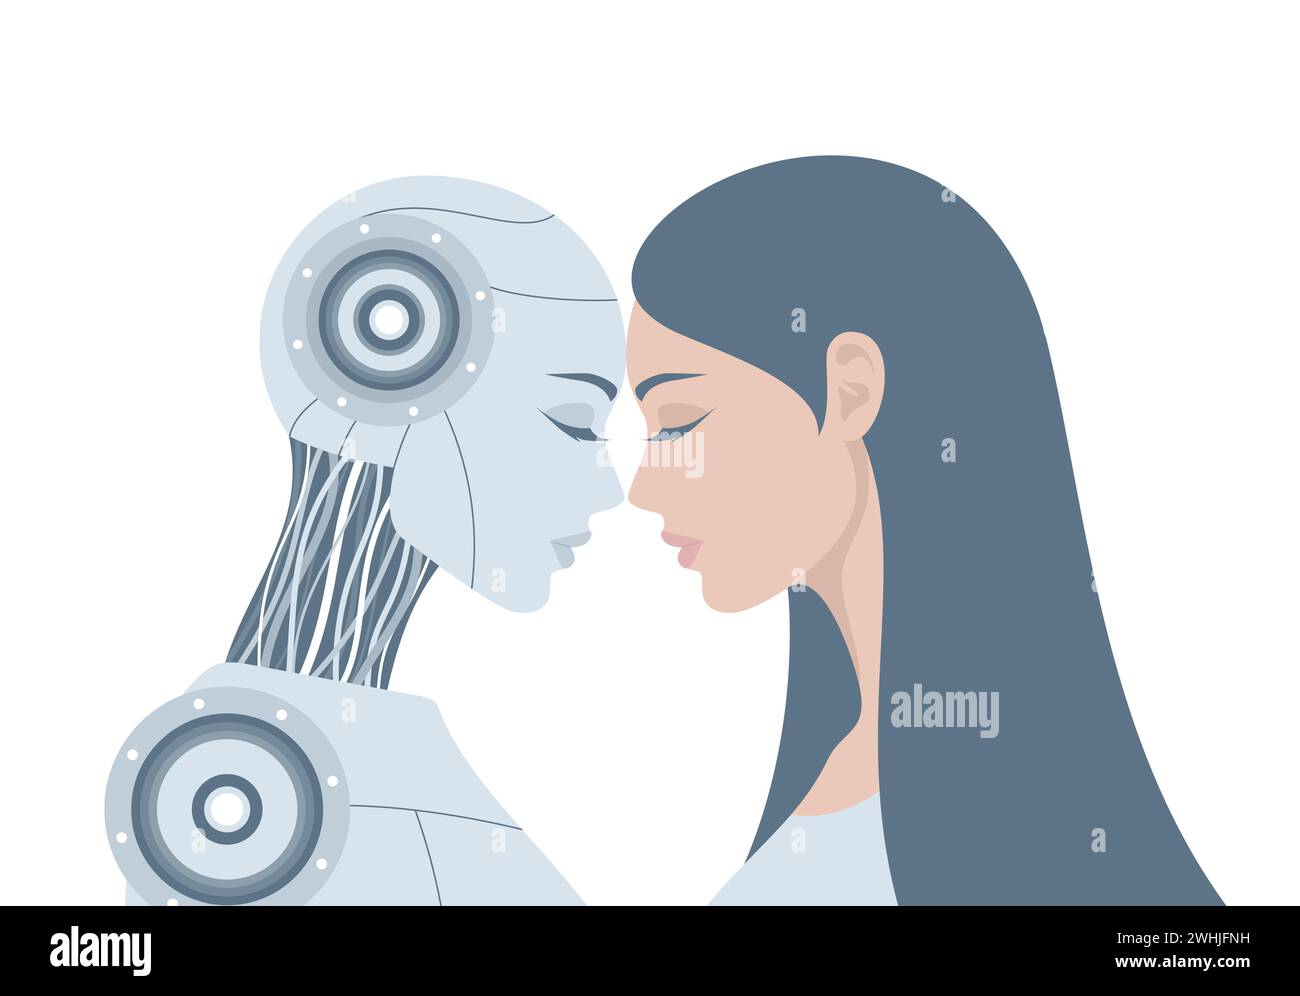 Weibliche humanoide Roboter und menschliche Frau stehen zusammen, lehnen ihre Stirn gegeneinander, isoliert auf weißem Hintergrund. Flachvektorillus Stock Vektor